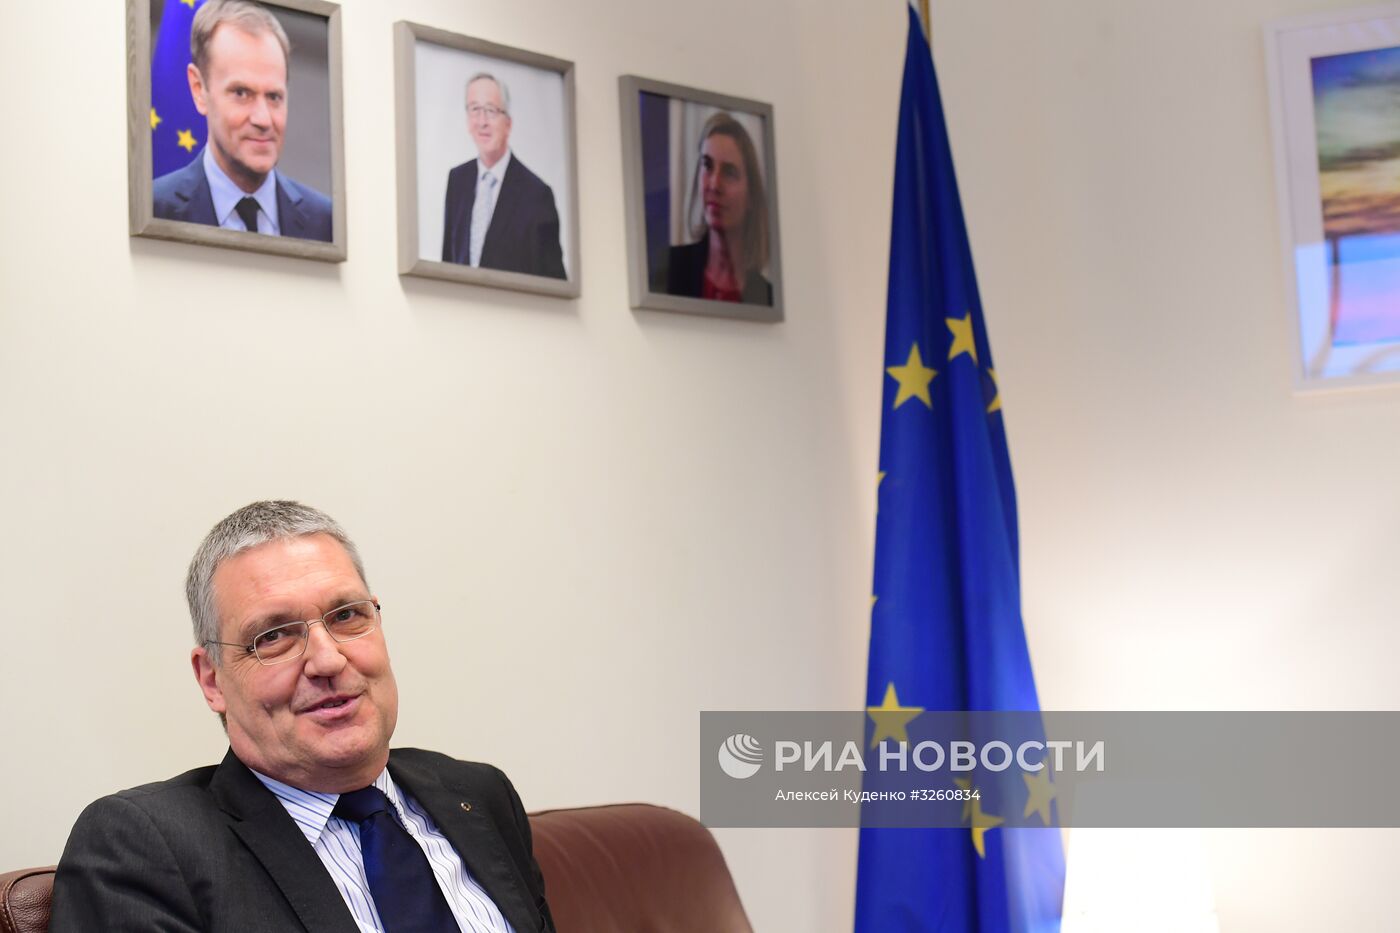 Интервью с главой представительства ЕС в России М. Эдерером